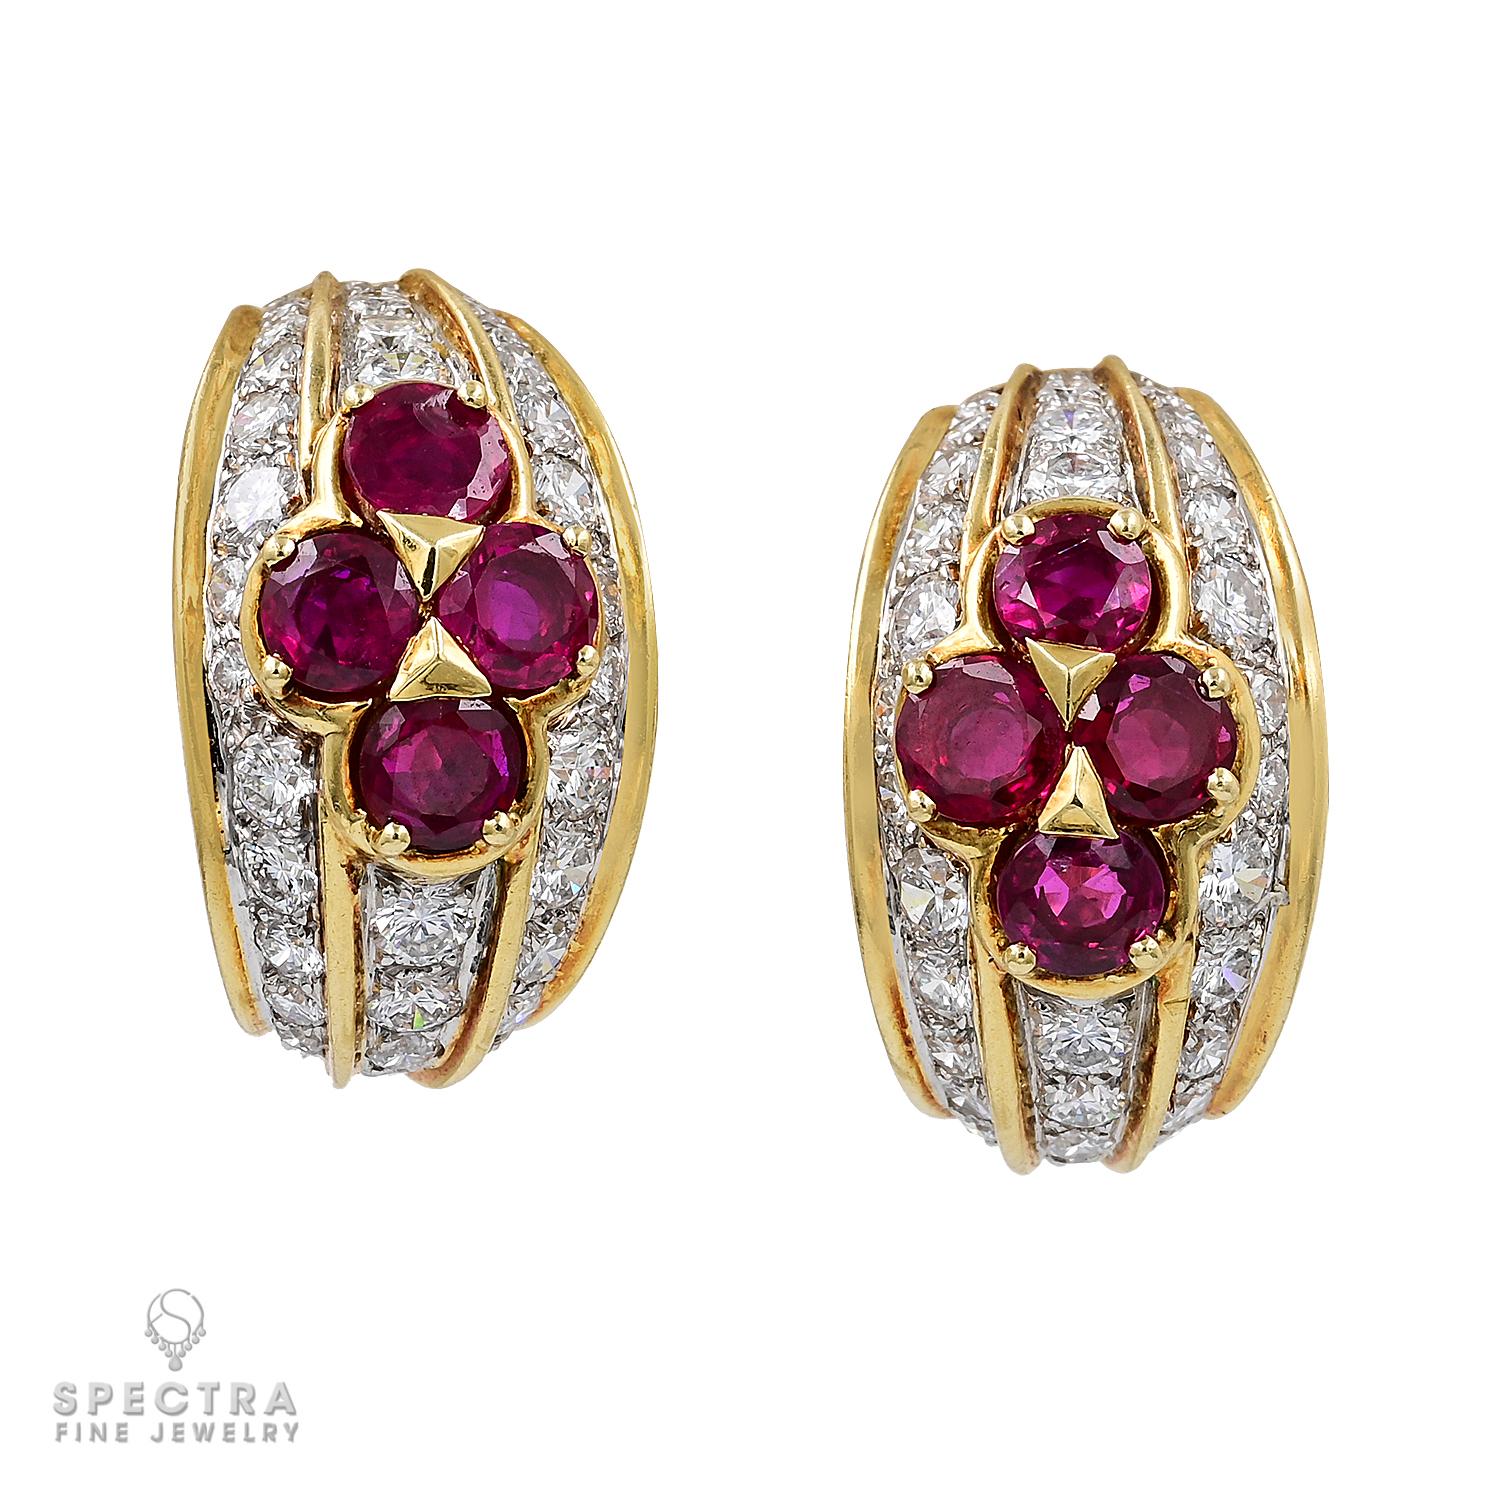 Les rubis d'un bijou Van Cleef & Arpels sont d'une grande beauté, riches en couleurs et d'un éclat subtil. Depuis sa création place Vendôme à Paris en 1906, la Maison s'est distinguée par la créativité de ses créations et la qualité suprême de tous